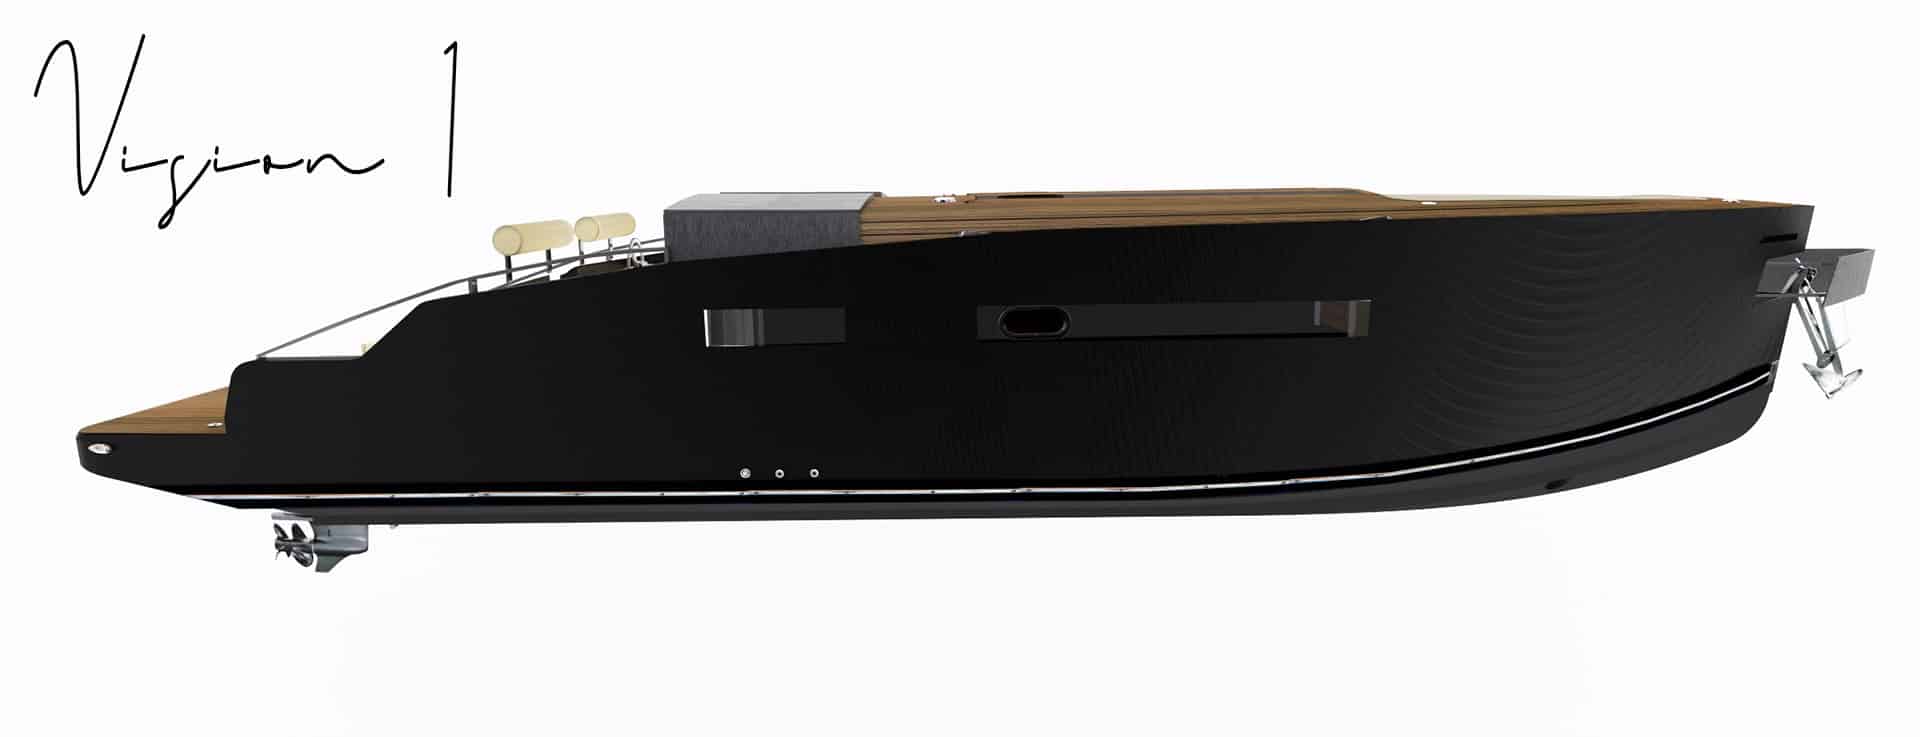 stahlzart-project-aluminaty-vision-1-boat